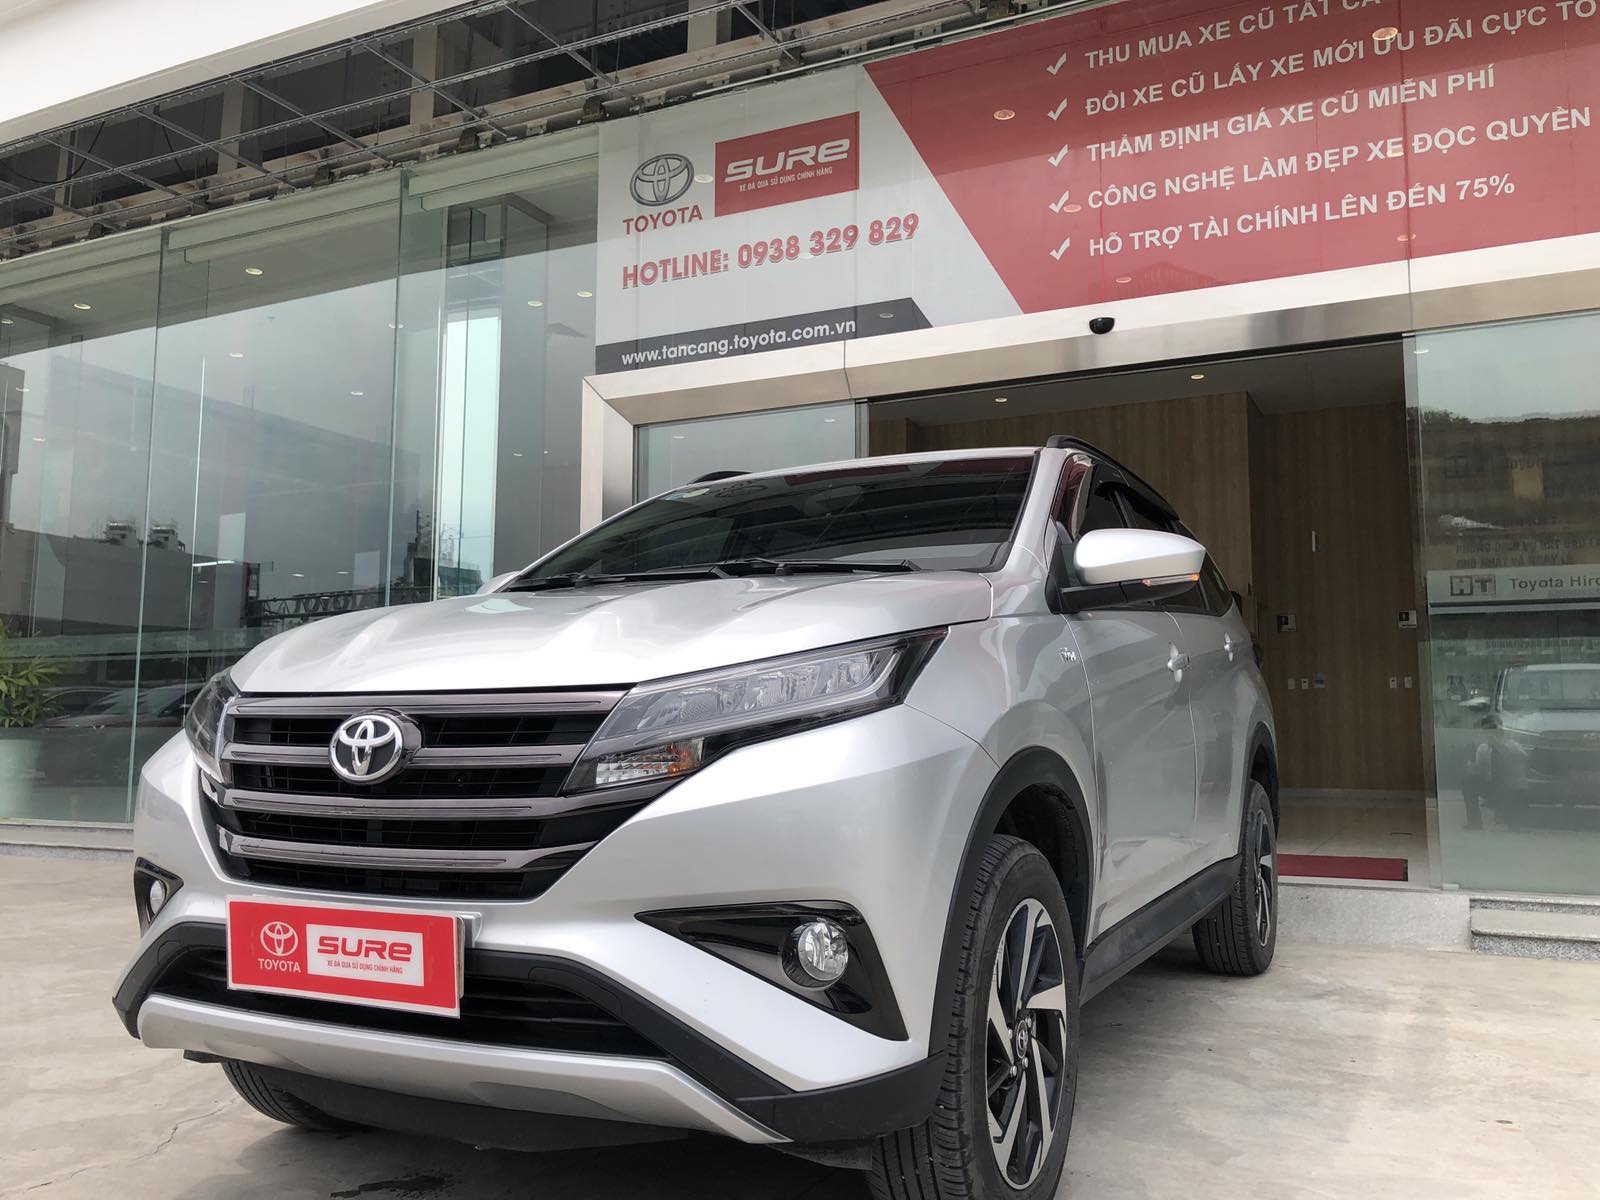 8 - Giá Xe Cũ Toyota Rush 1.5G - Sản Xuất 2019 - Muaxegiatot.vn